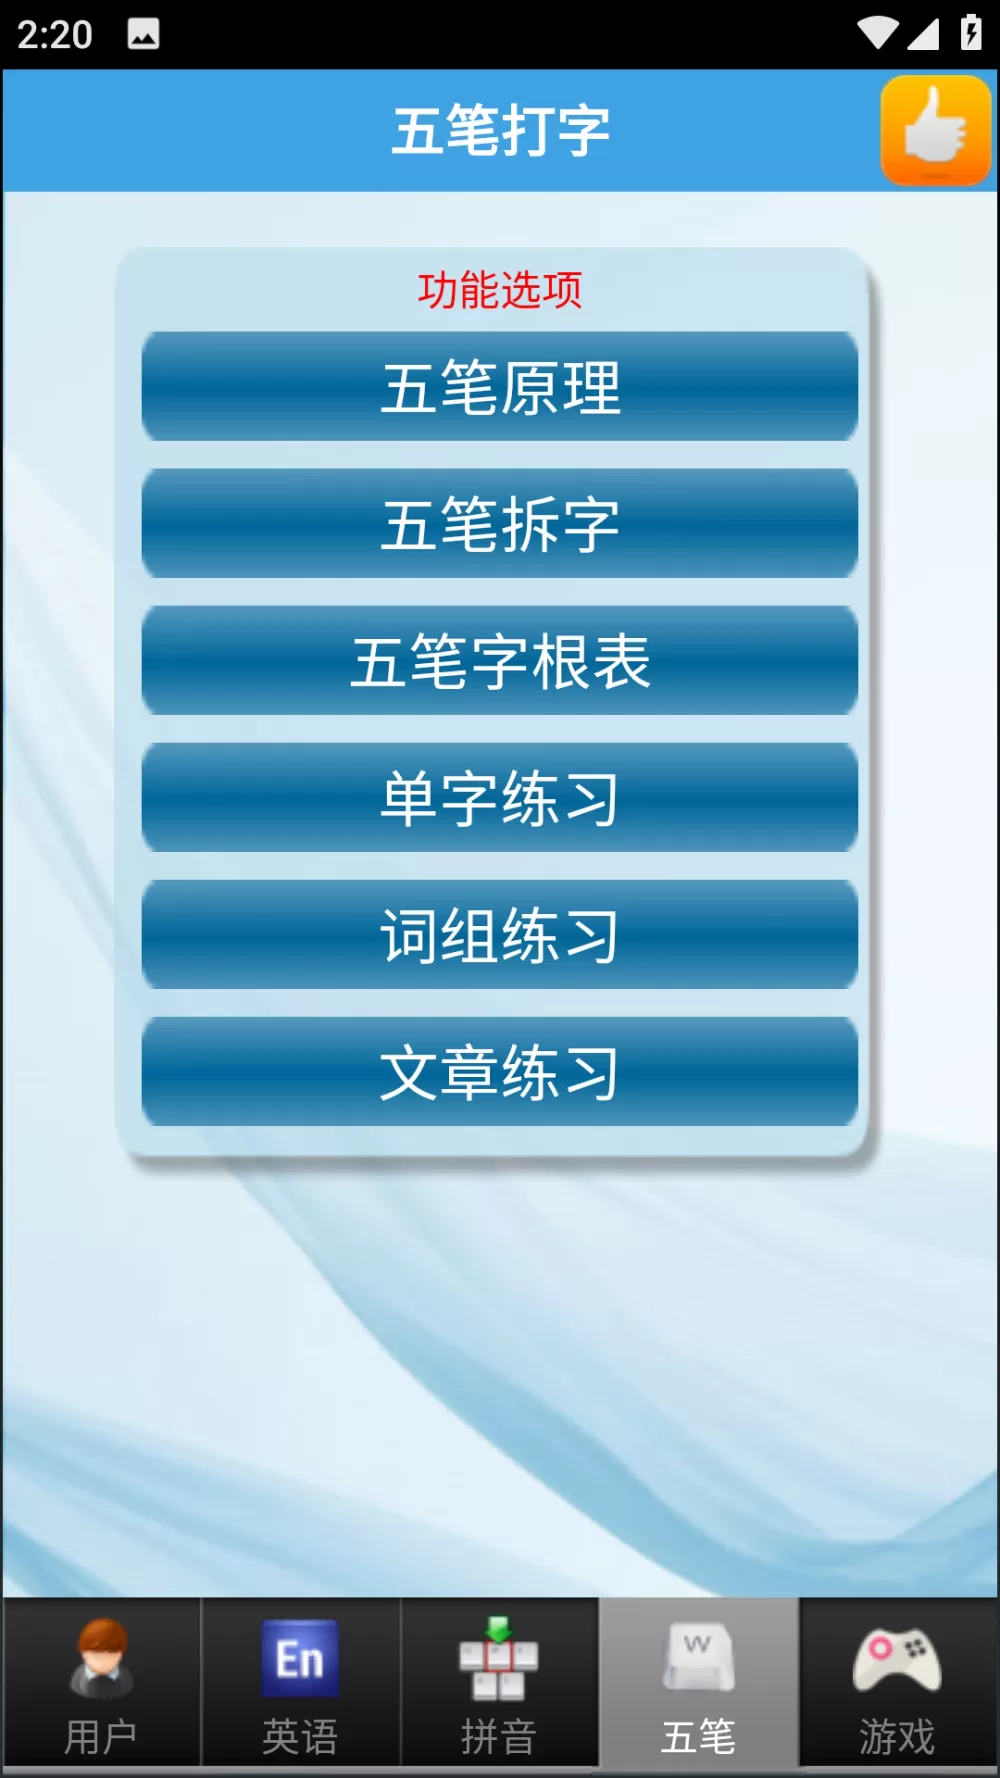 夫妻之间的108种插秧法中文版